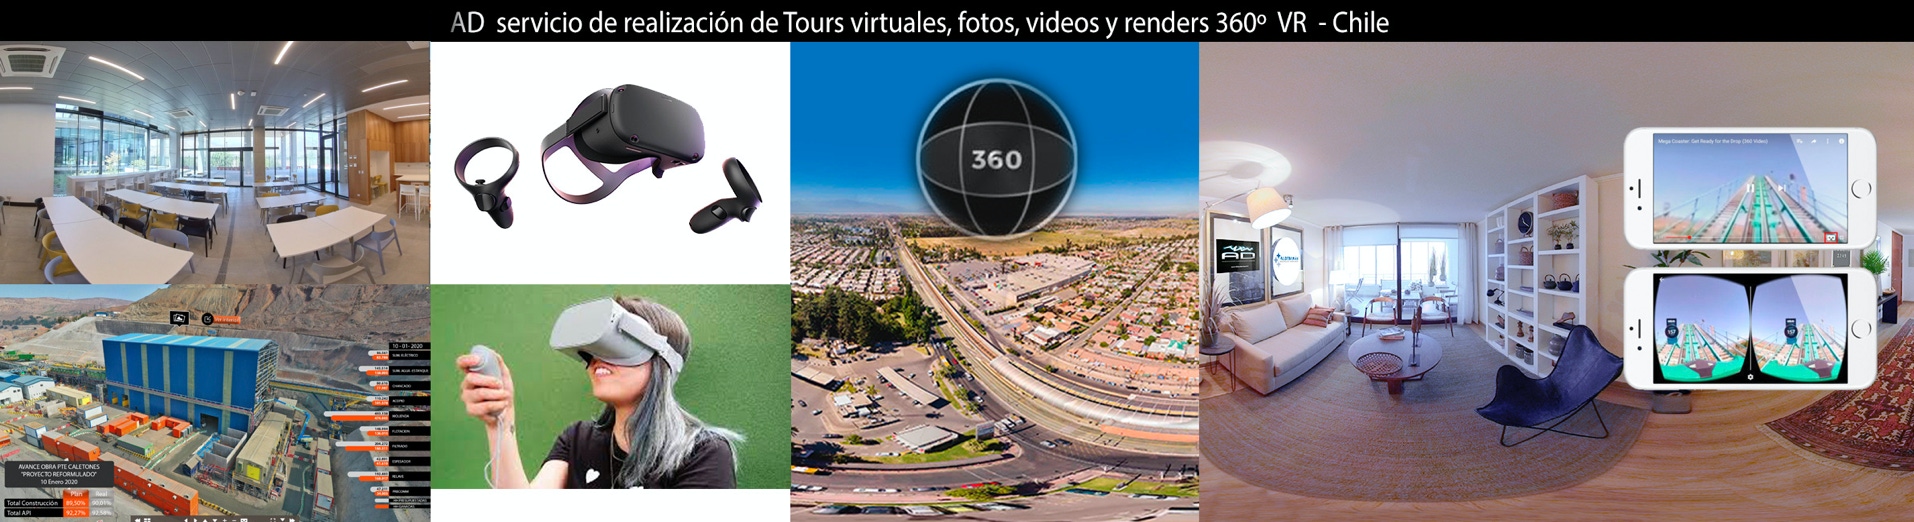 Servicio de recorridos virtuales 360 interactivos y VR en Chile por AD audiovisual y diseño